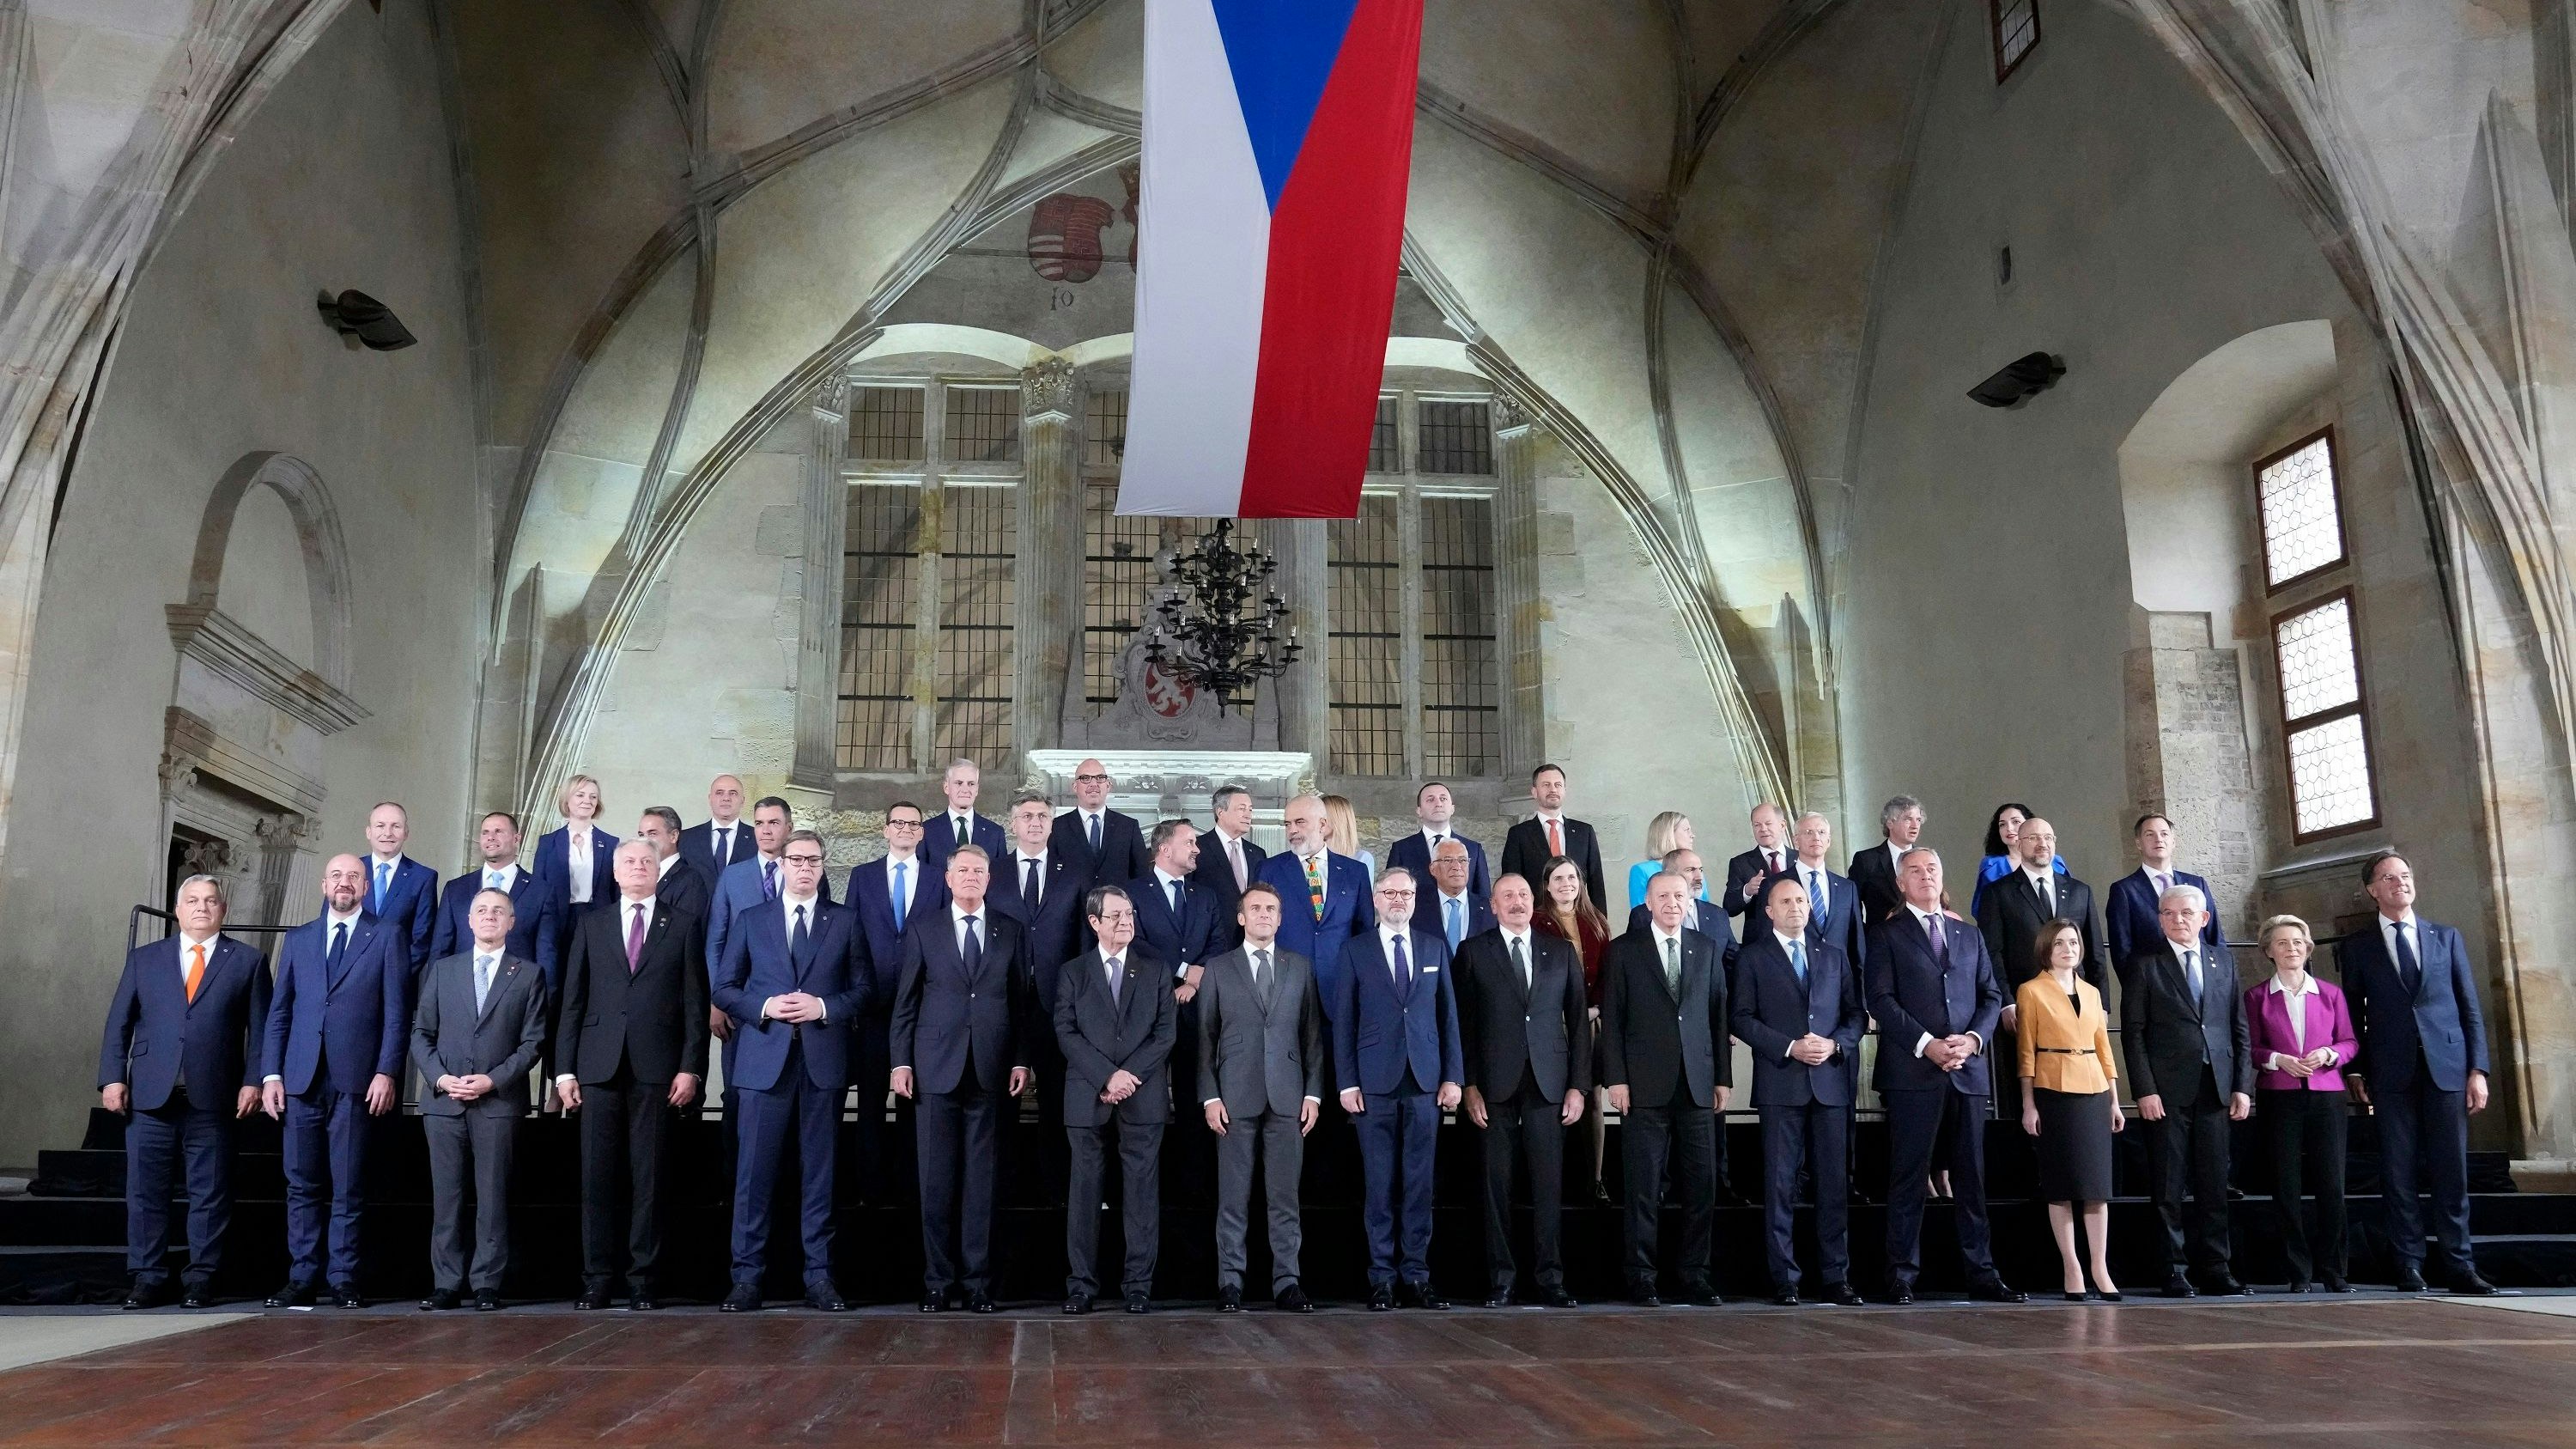 Die europäischen Staats- und Regierungschefs während eines Treffens der Europäischen Politischen Gemeinschaft auf der Prager Burg. Foto: dpa/Bandic